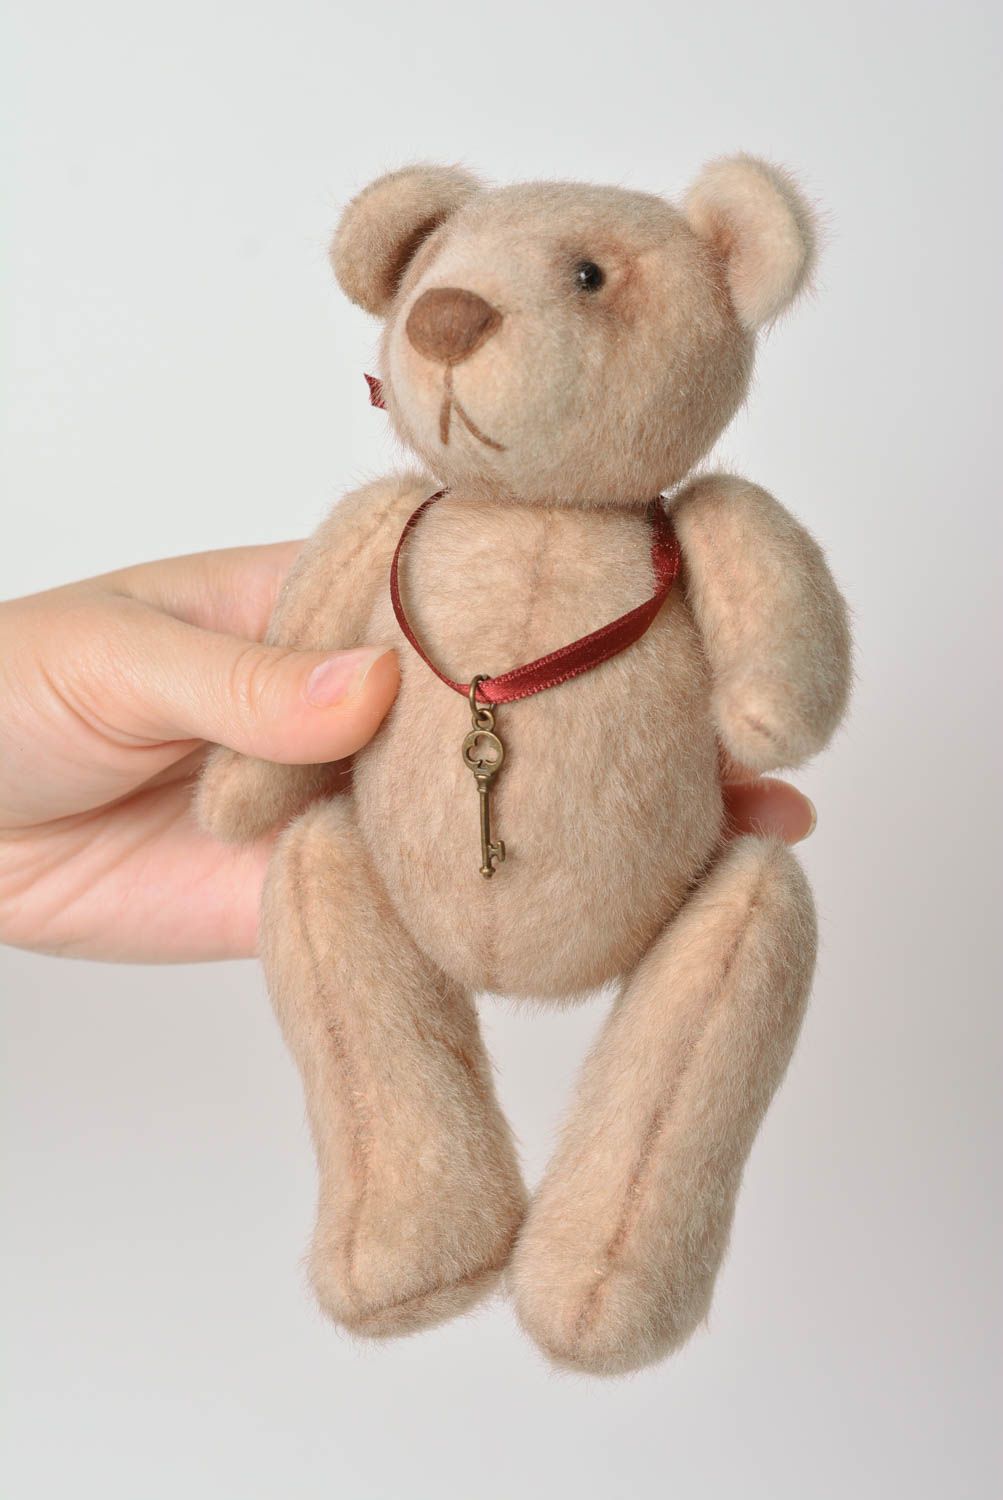 Игрушка ручной работы игрушка мишка интересный подарок для ребенка красивая фото 3